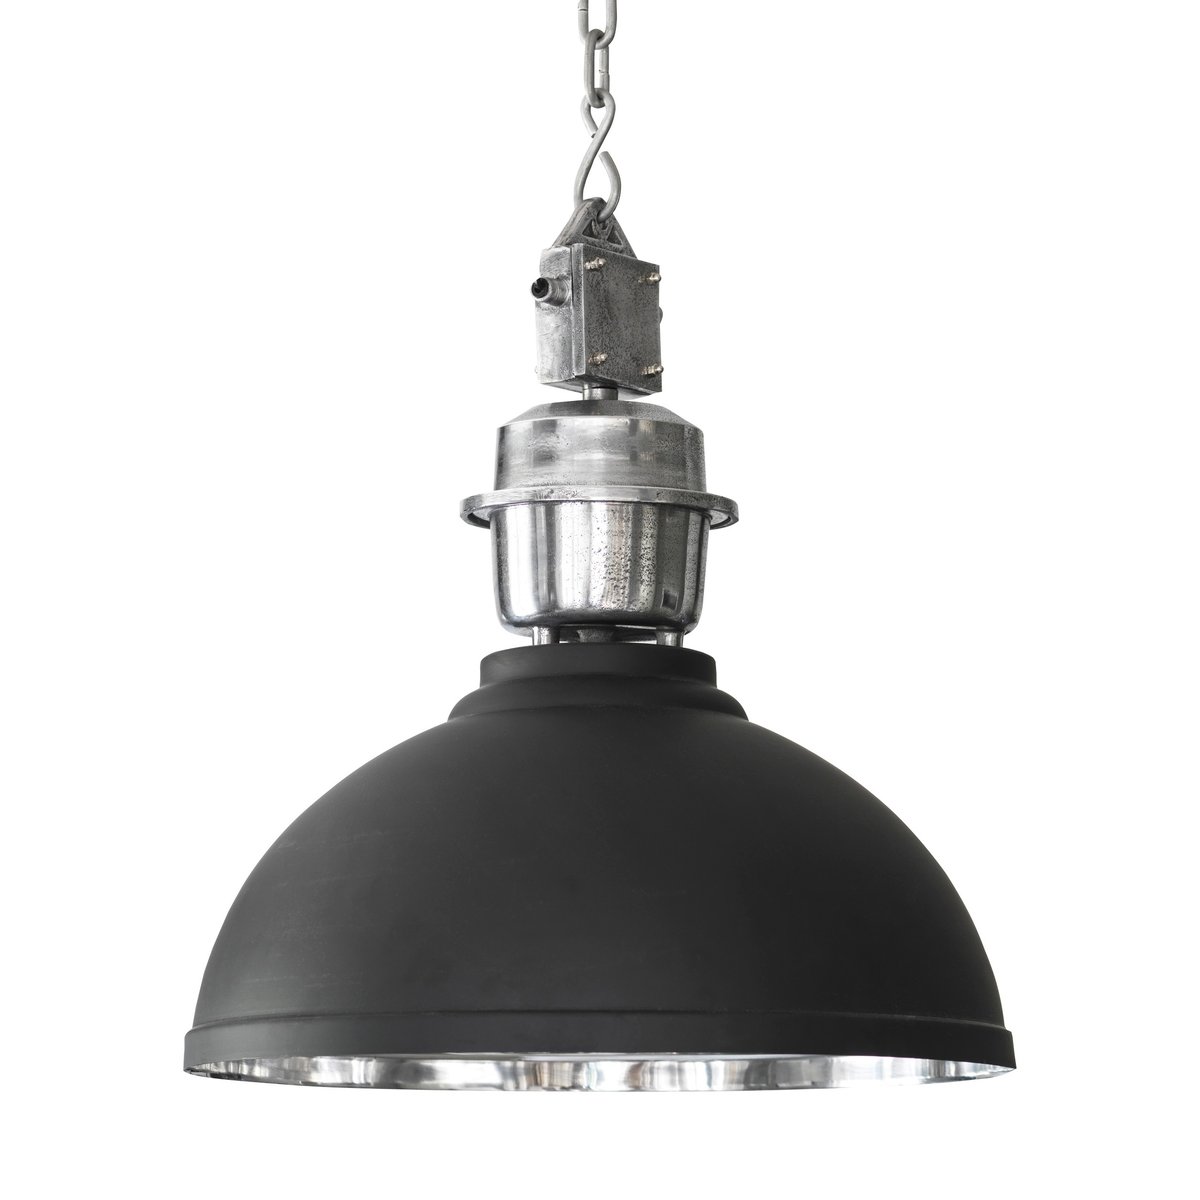 PR Home Manchester plafondlamp, Ø 52 cm Zwart-zilver